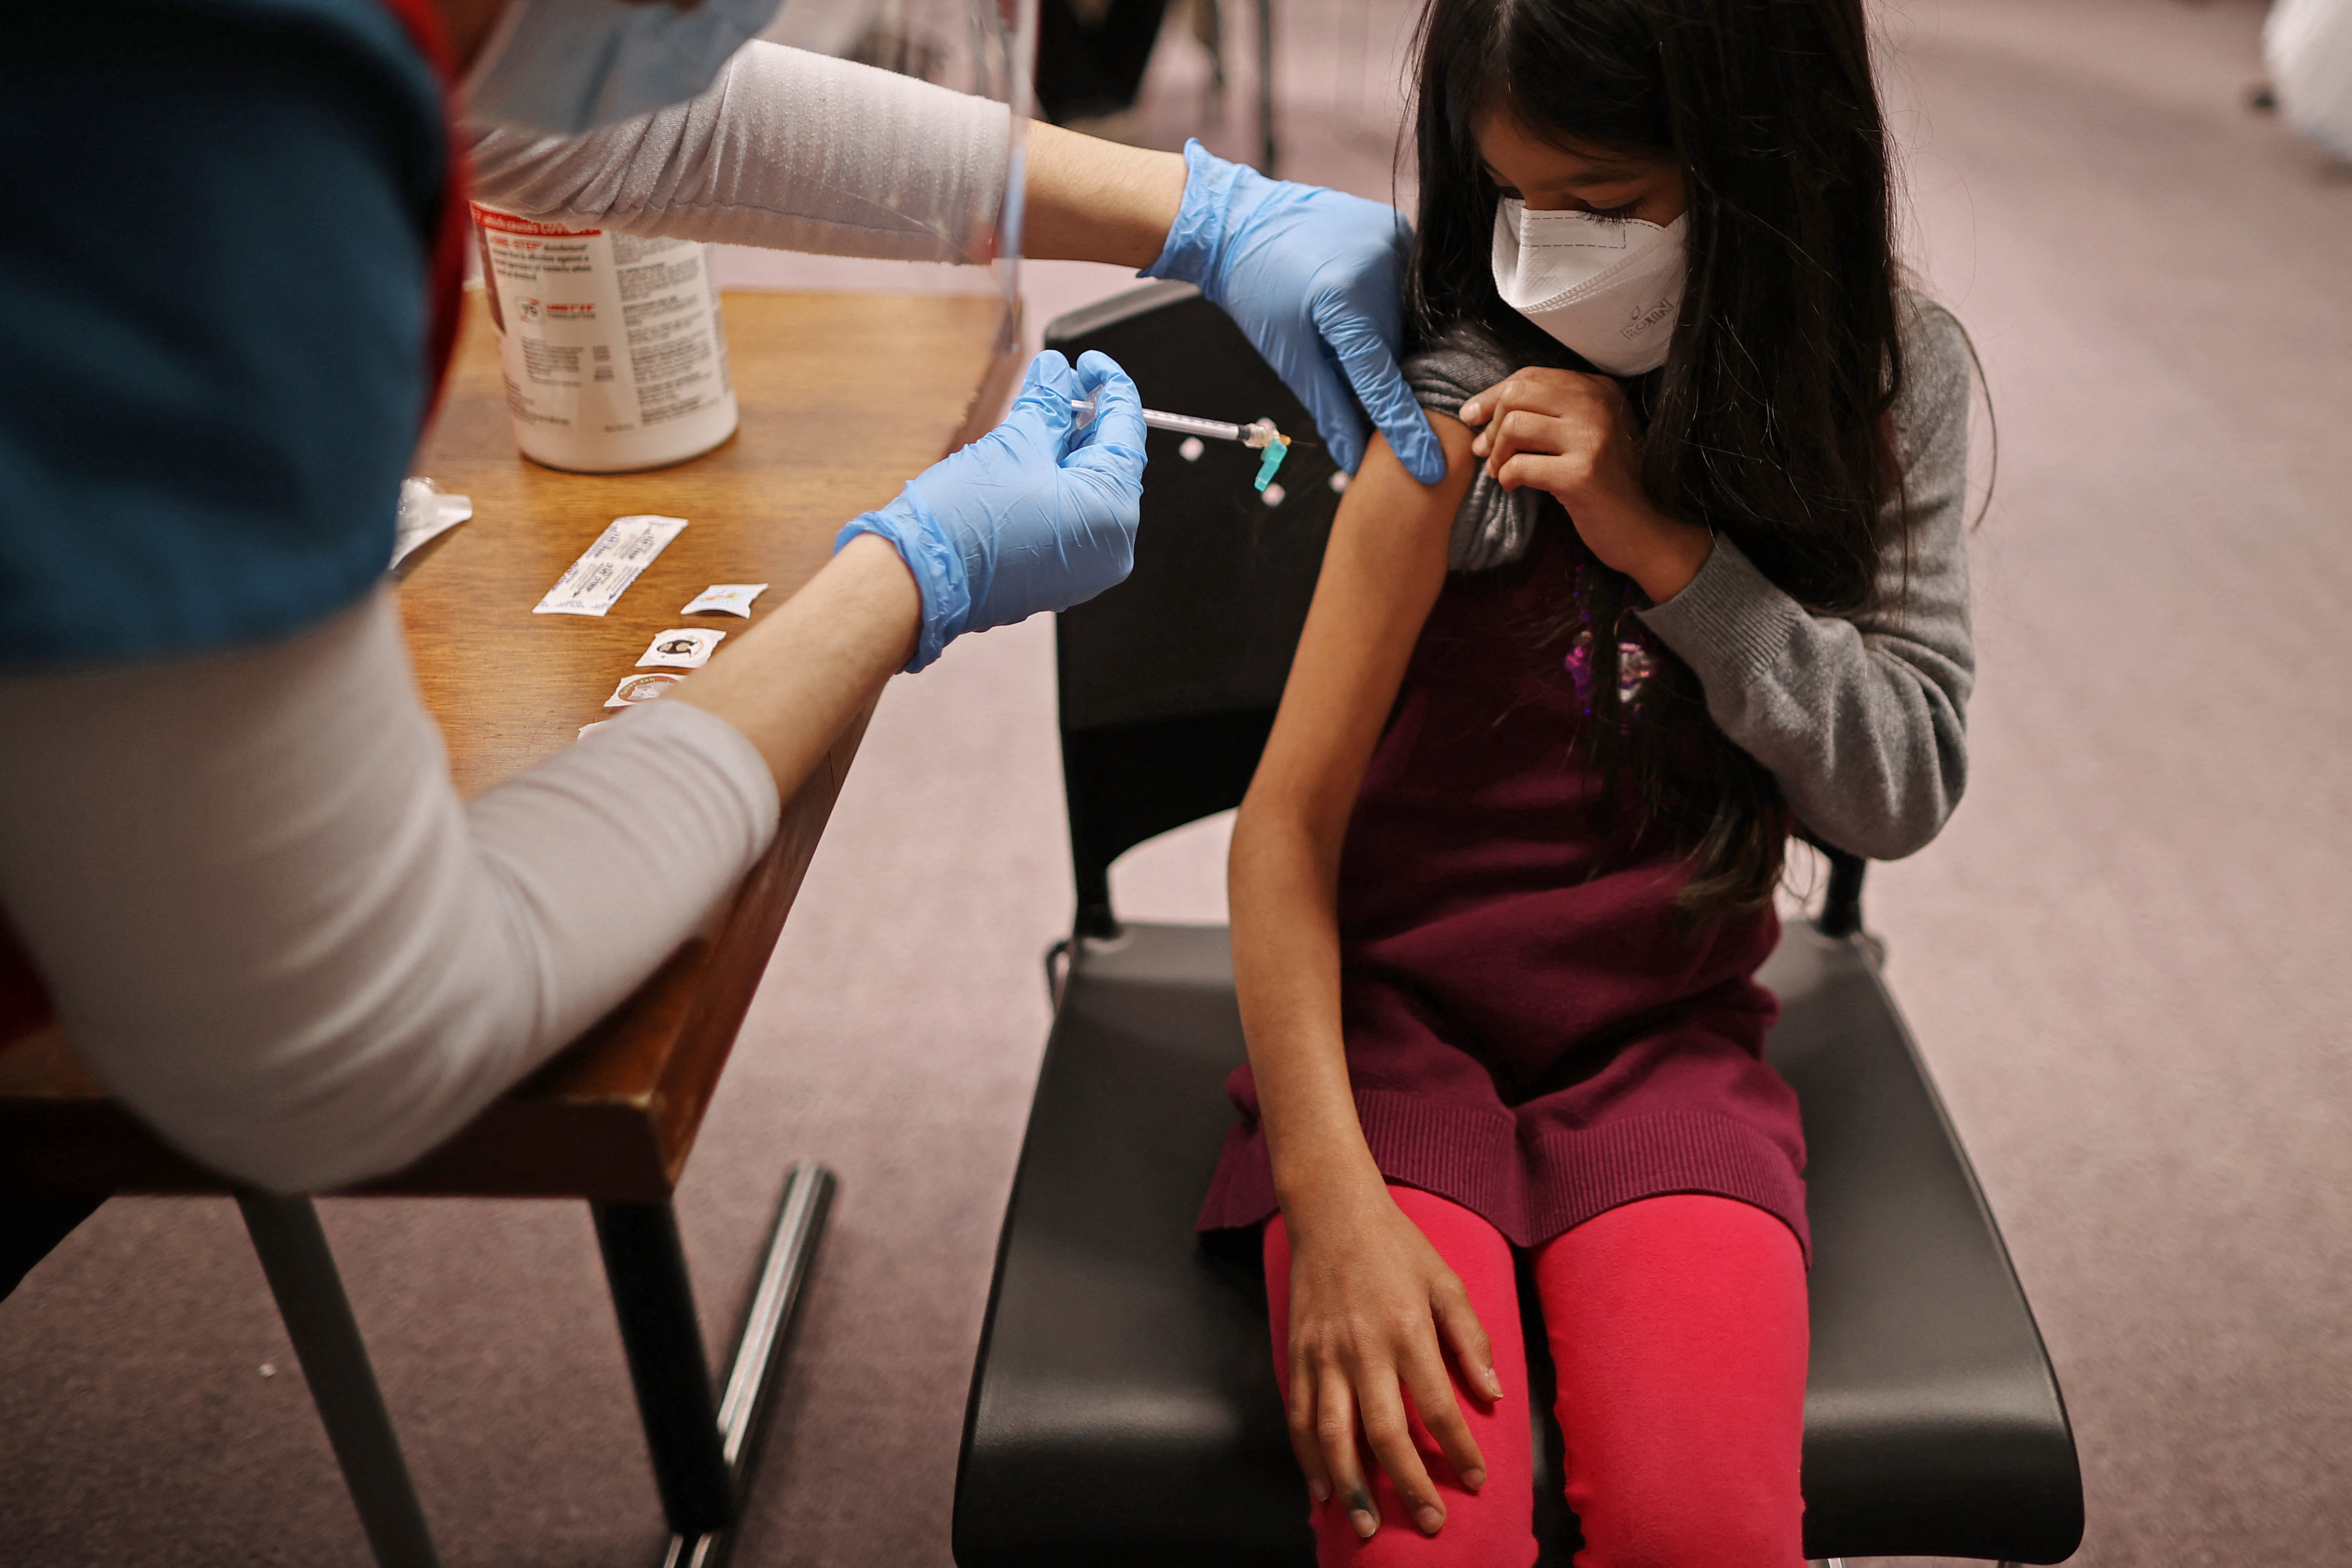 December 13-án érkeznek az EU-ba a gyerekeknek adható Pfizer vakcinák